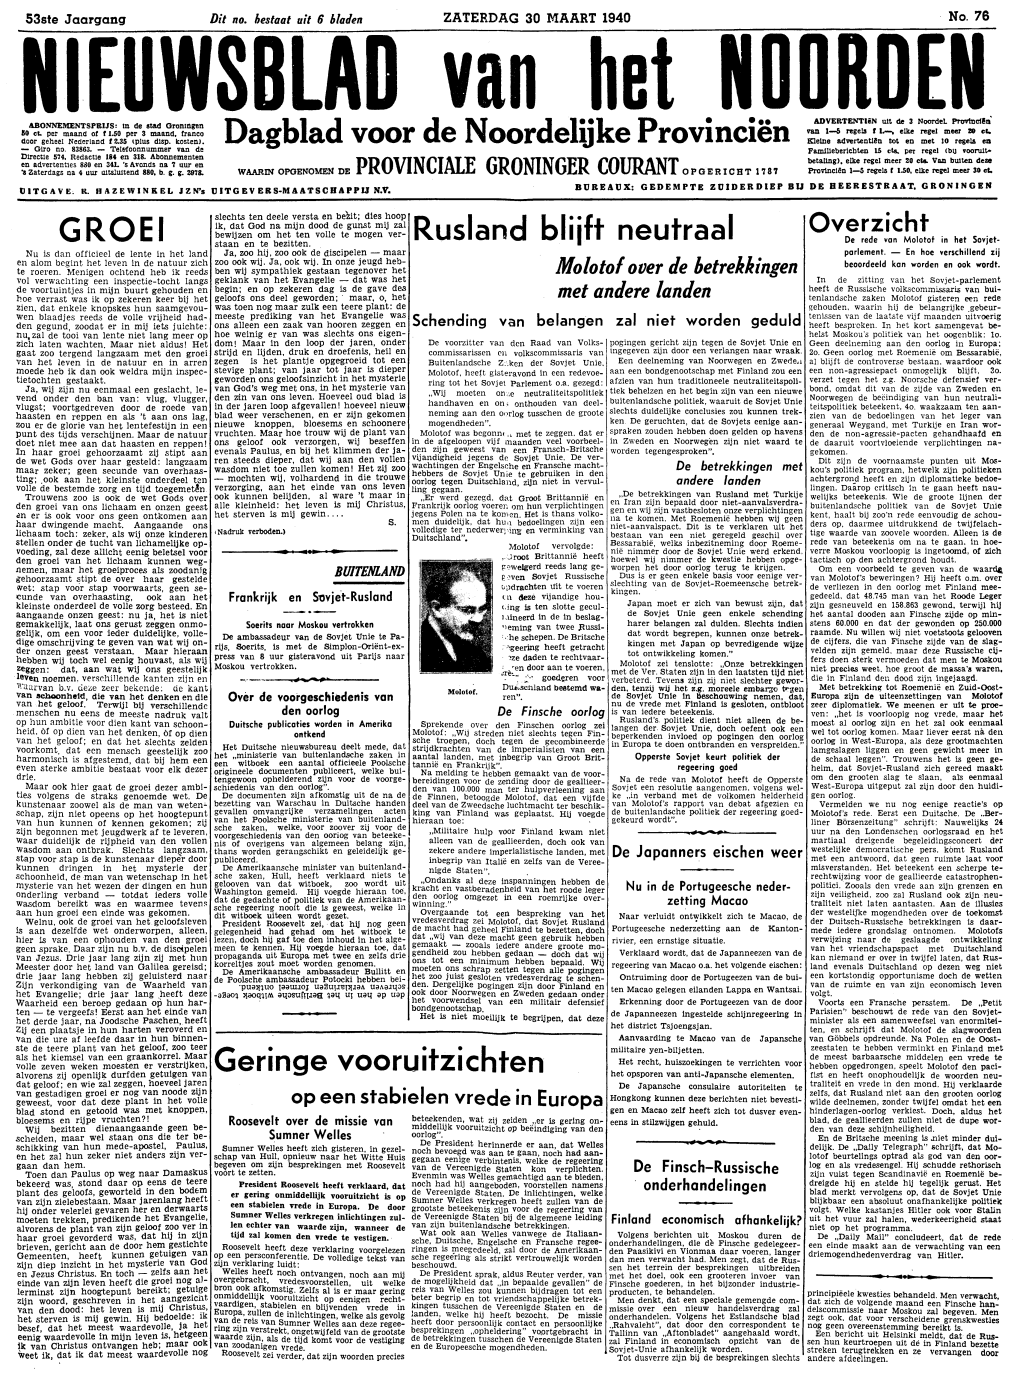 Nieuwsblad Van Het Noorden Van Zaterdag 30 Maart 1940 Eerste Blad